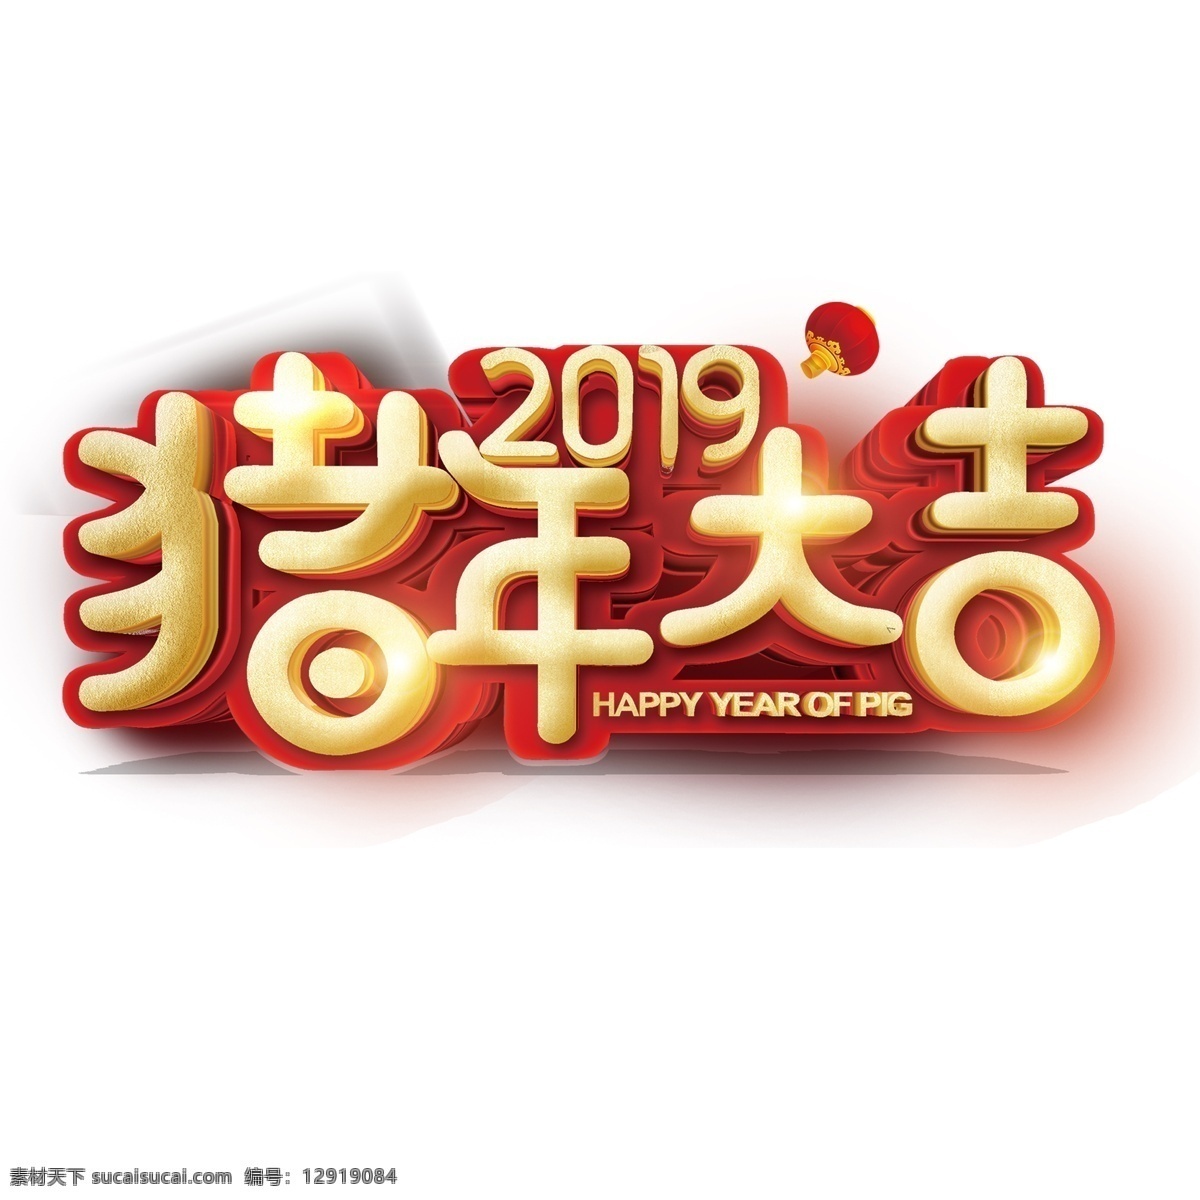 2019 猪年 大吉 新年 字体 元素 字体设计 字体元素 新年快乐 猪年大吉